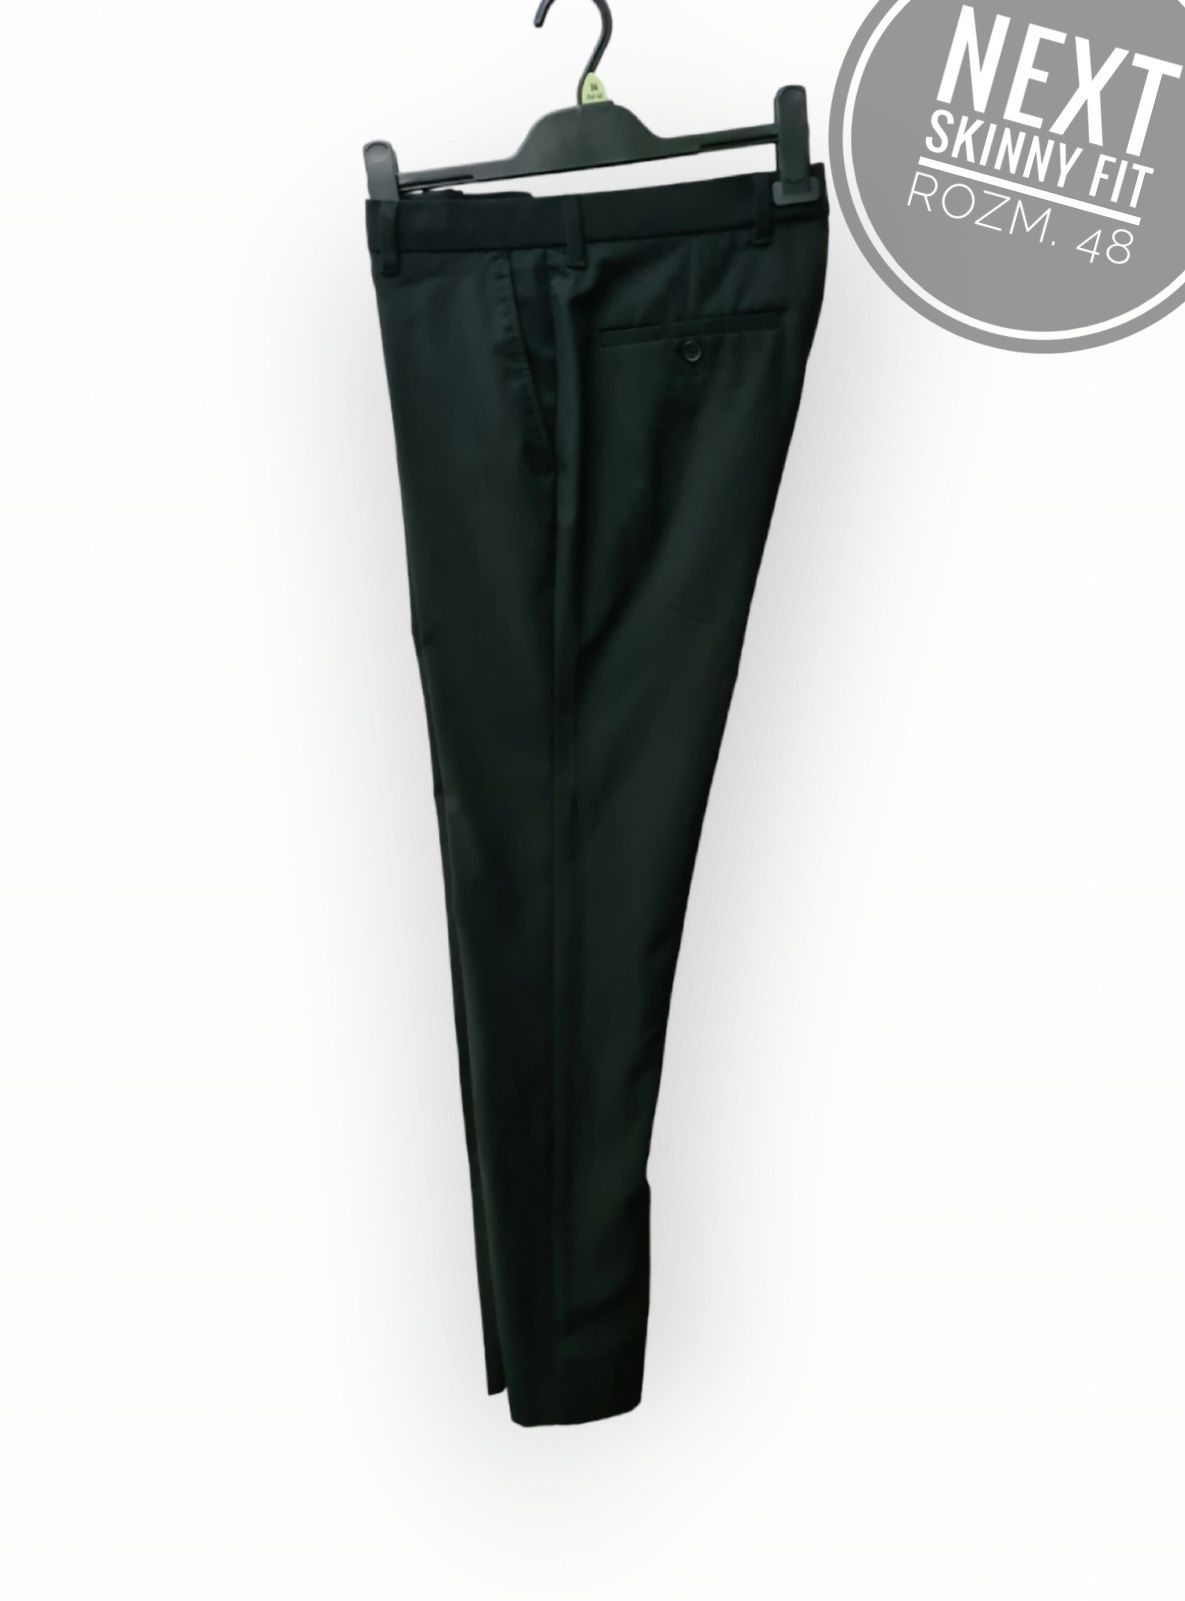 Eleganckie spodnie czarne skinny fit rozm. 32 48 Next tailored fit